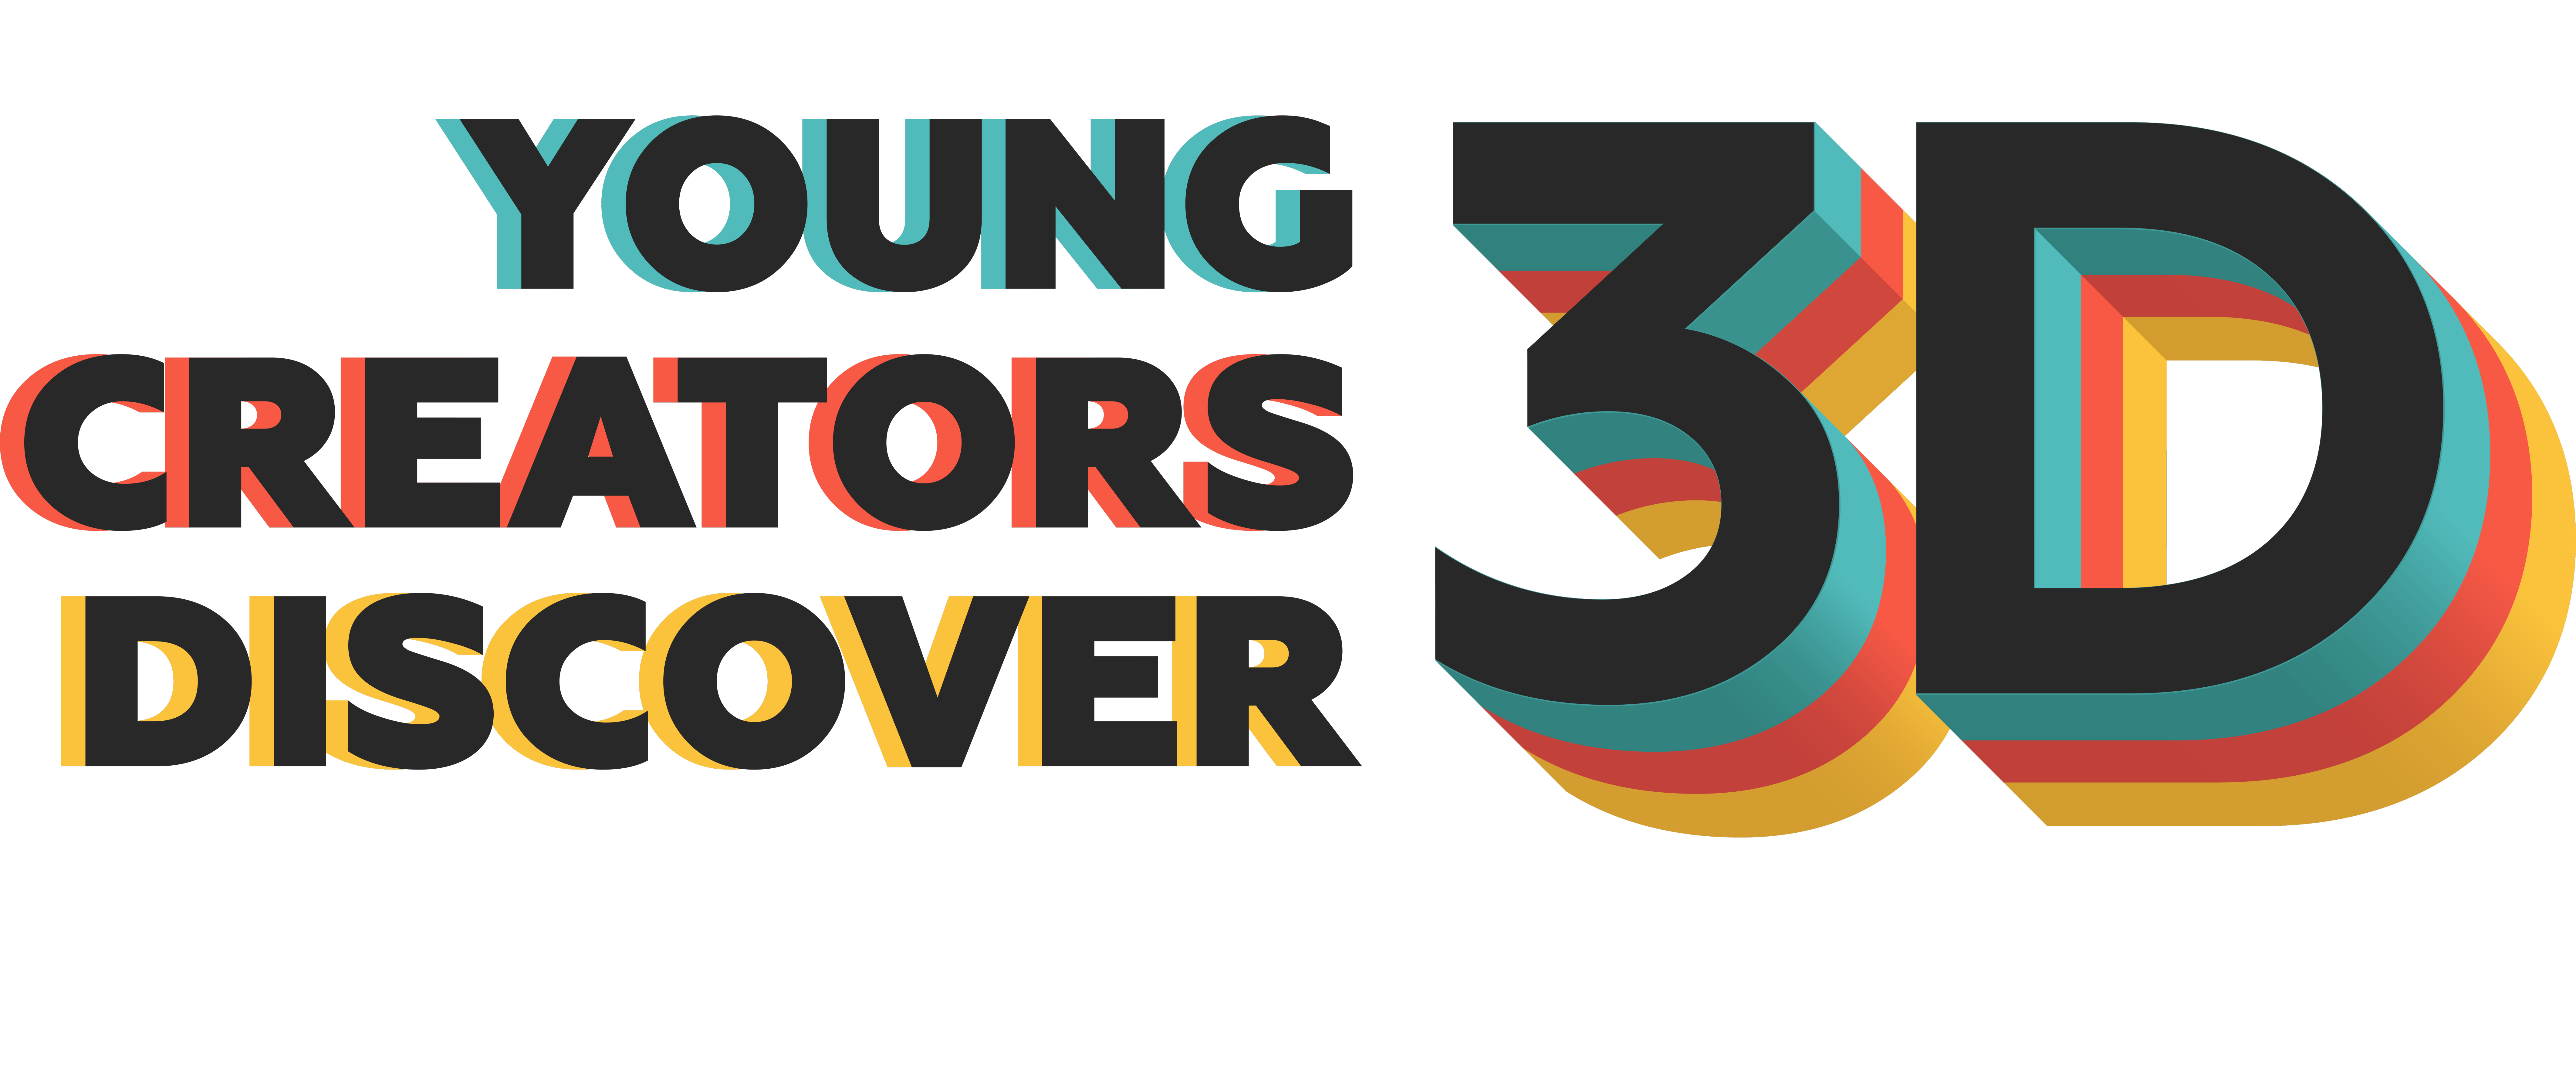 Young Creators Discover 3D